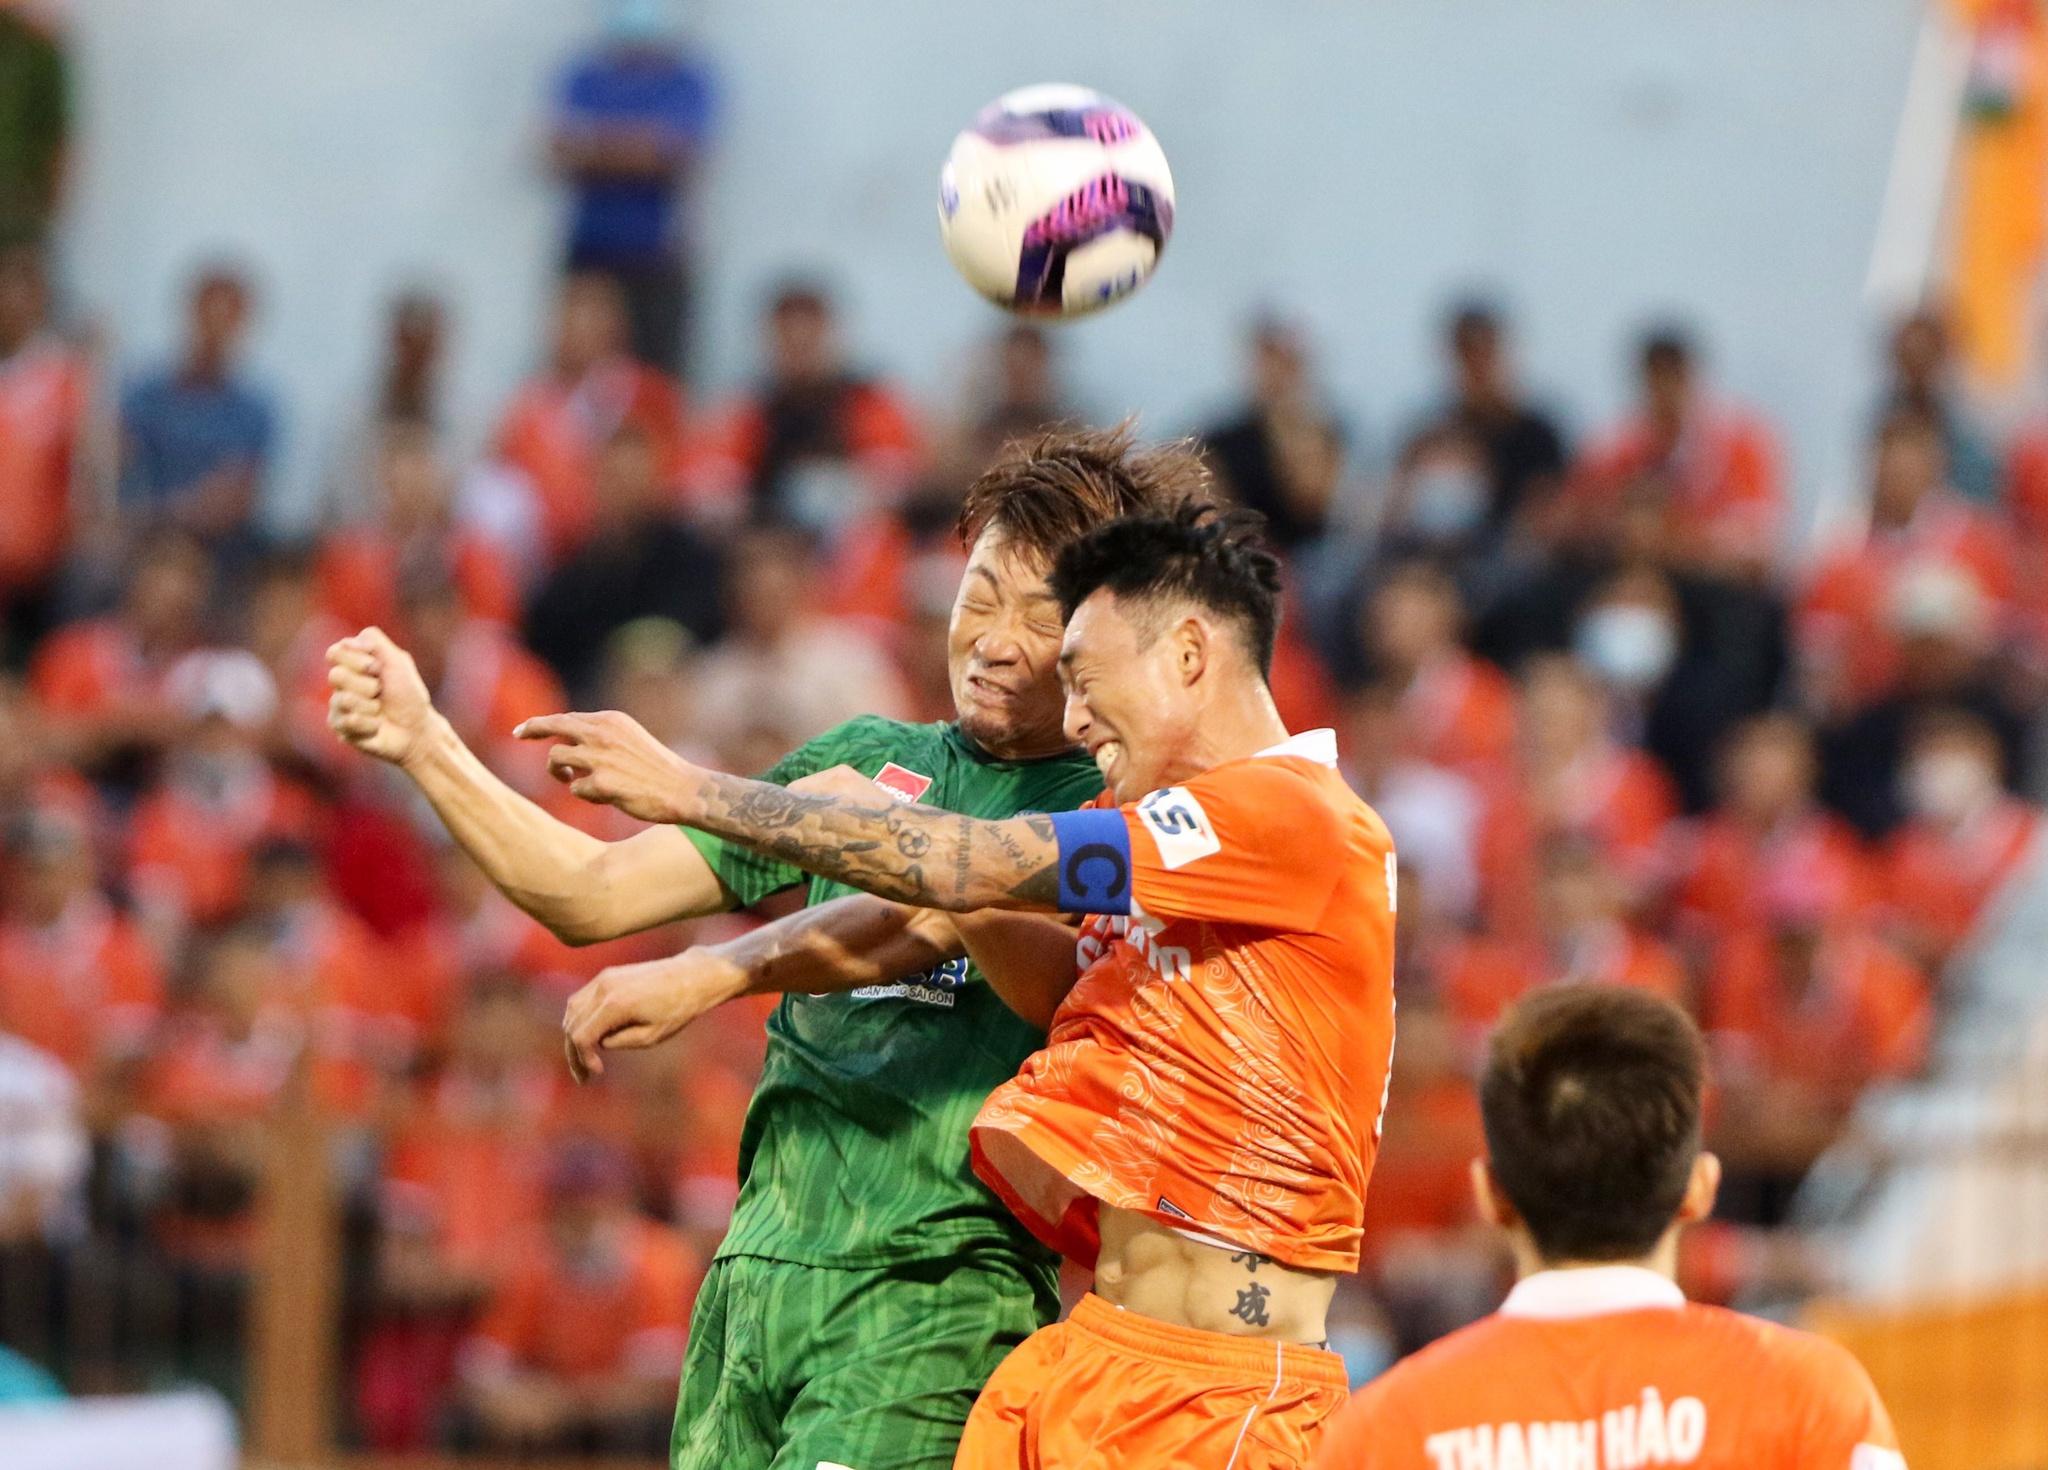 Kết quả V-League 2021, Bình Định 1-0 Sài Gòn FC: Hồ Tấn Tài khiến 'hung thần' Đỗ Merlo nín lặng! - ảnh 18